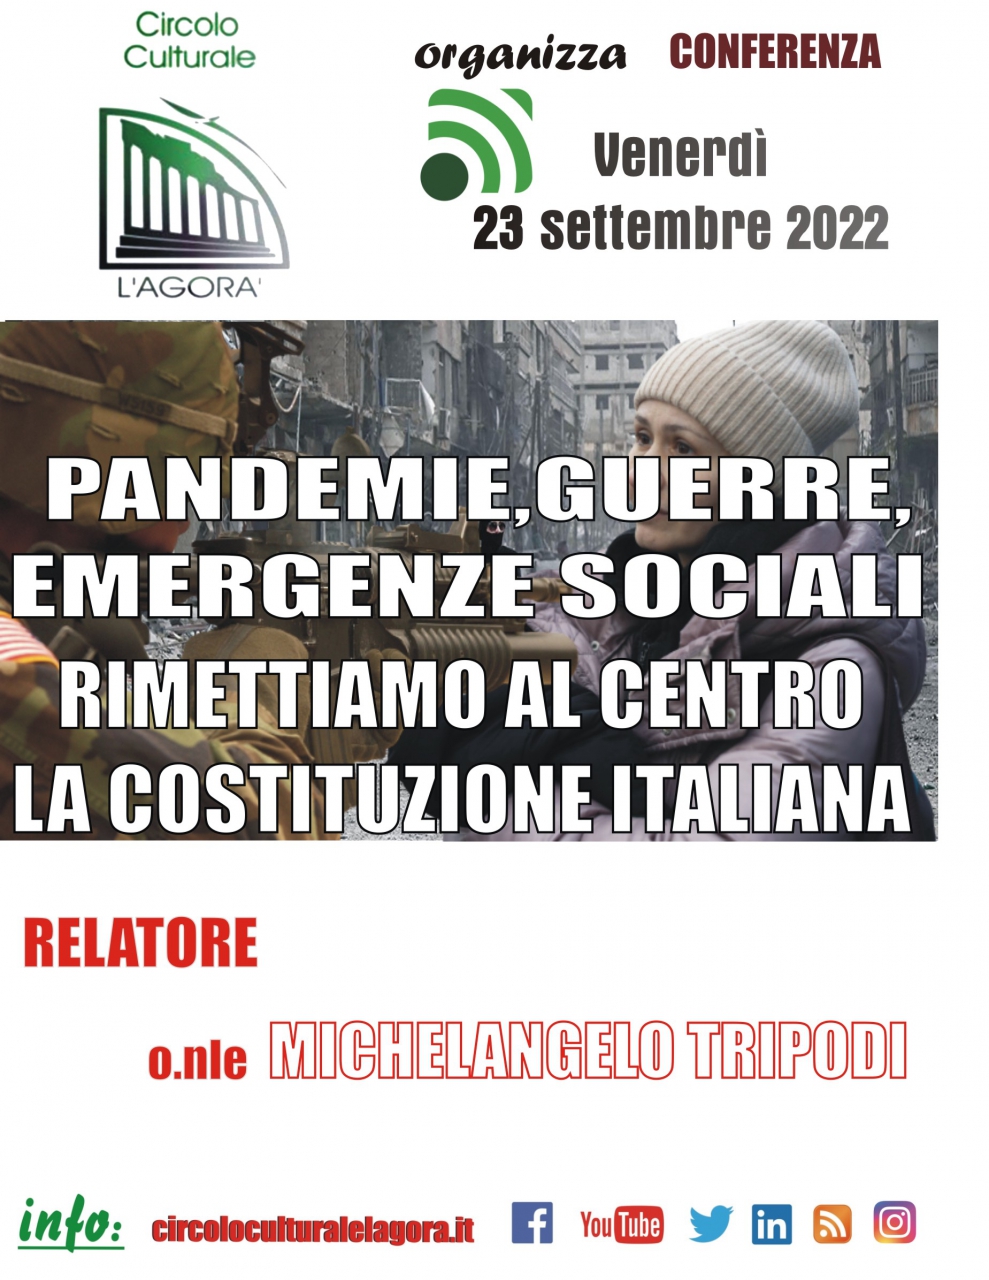 Pandemie, guerre, emergenze sociali. Rimettiamo al centro la Costituzione italiana”